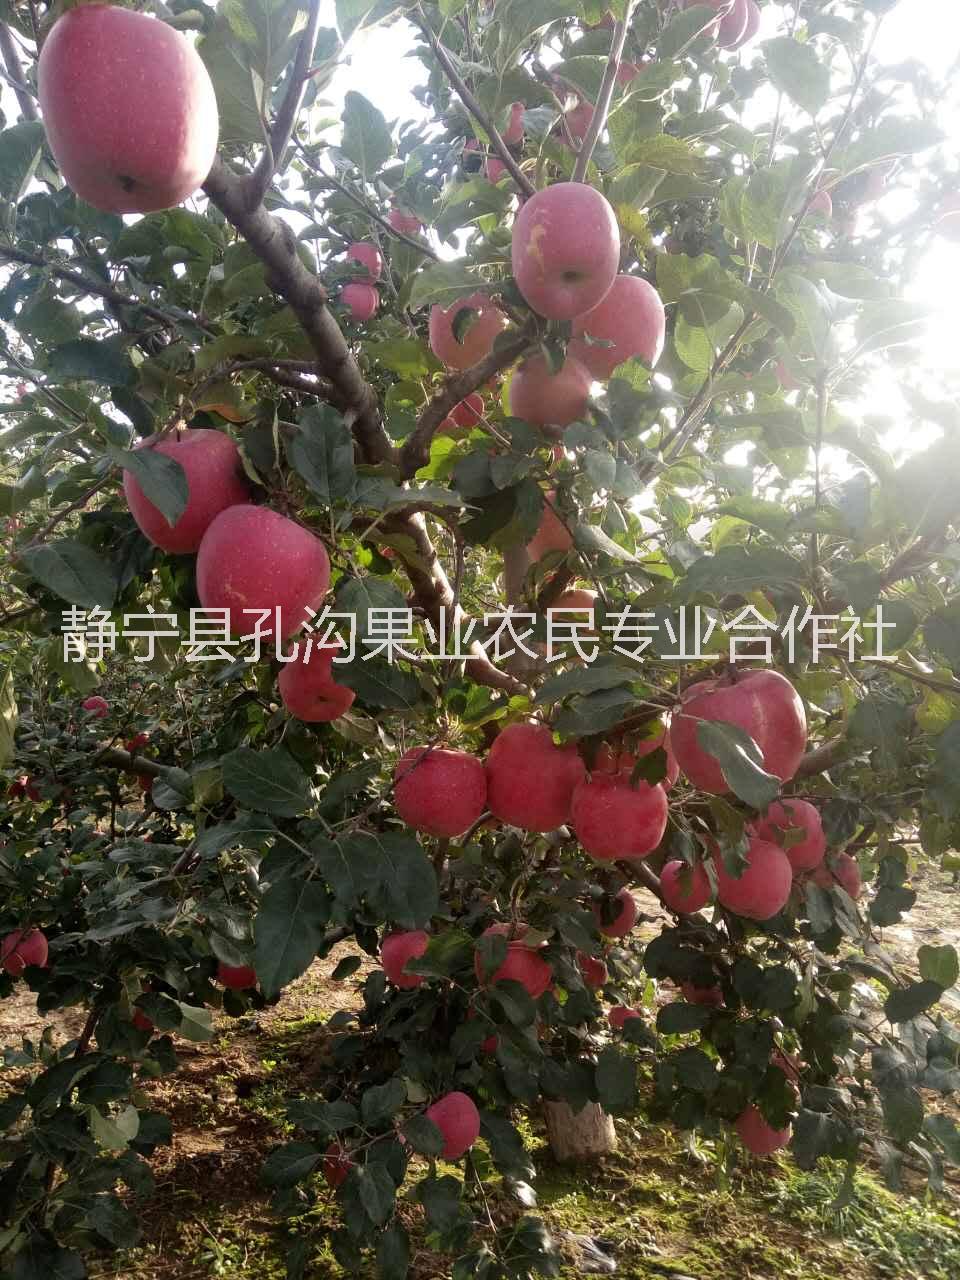 苹果红富士75#红富士苹果 甘肃静宁红富士9枚礼盒装 苹果红富士